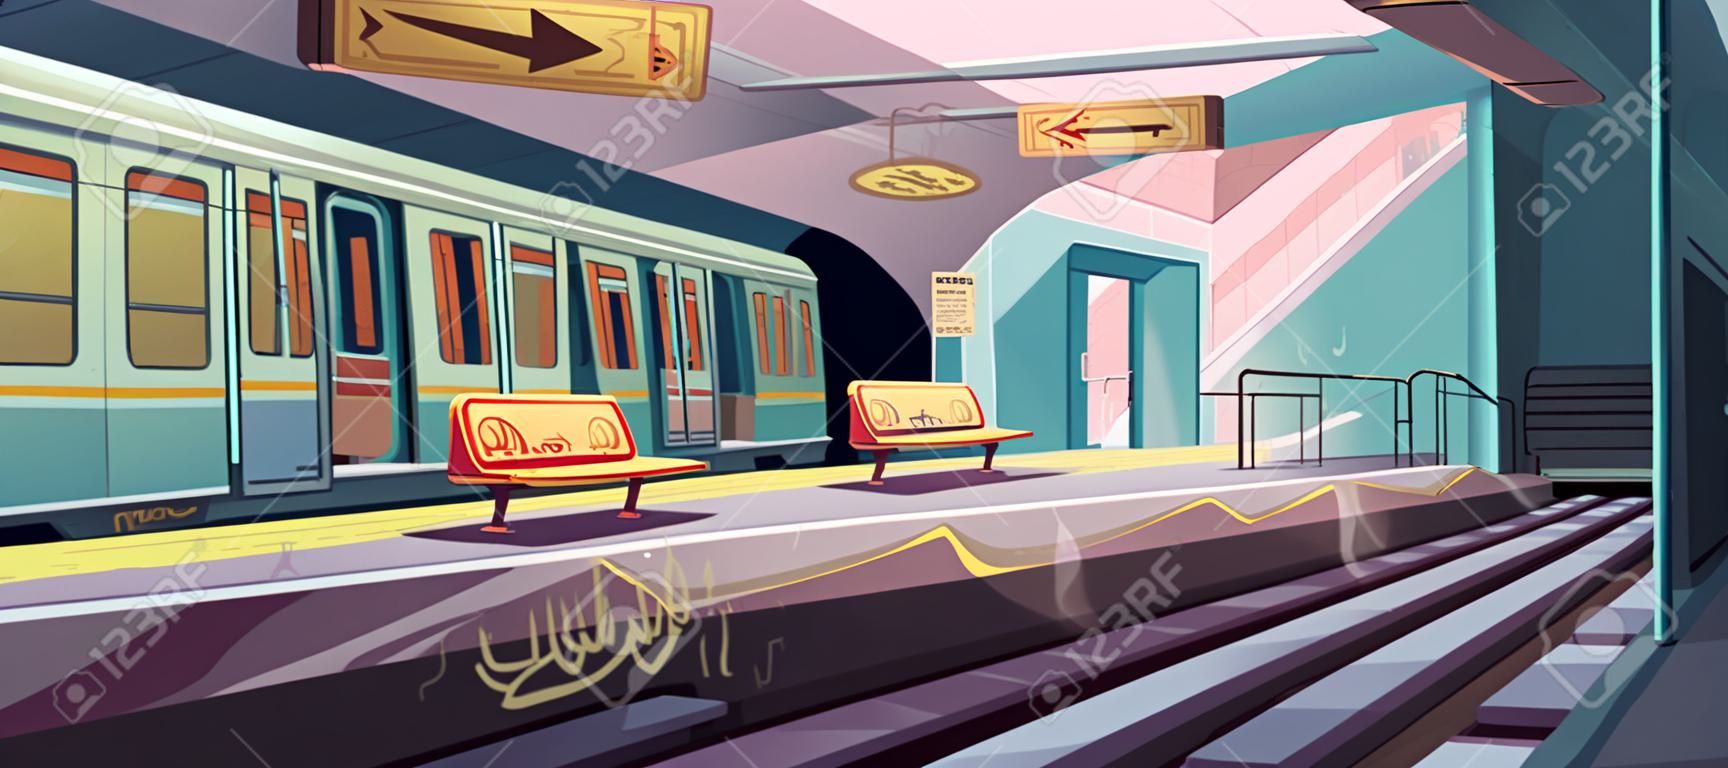 Stacja metra, pociąg przyjeżdżający do pustej platformy metra z podziemnego tunelu. wektorowa kreskówka ilustracja bałaganu wnętrza metra ze śmieciami, graffiti na siedzeniach i ścianach w obszarze getta